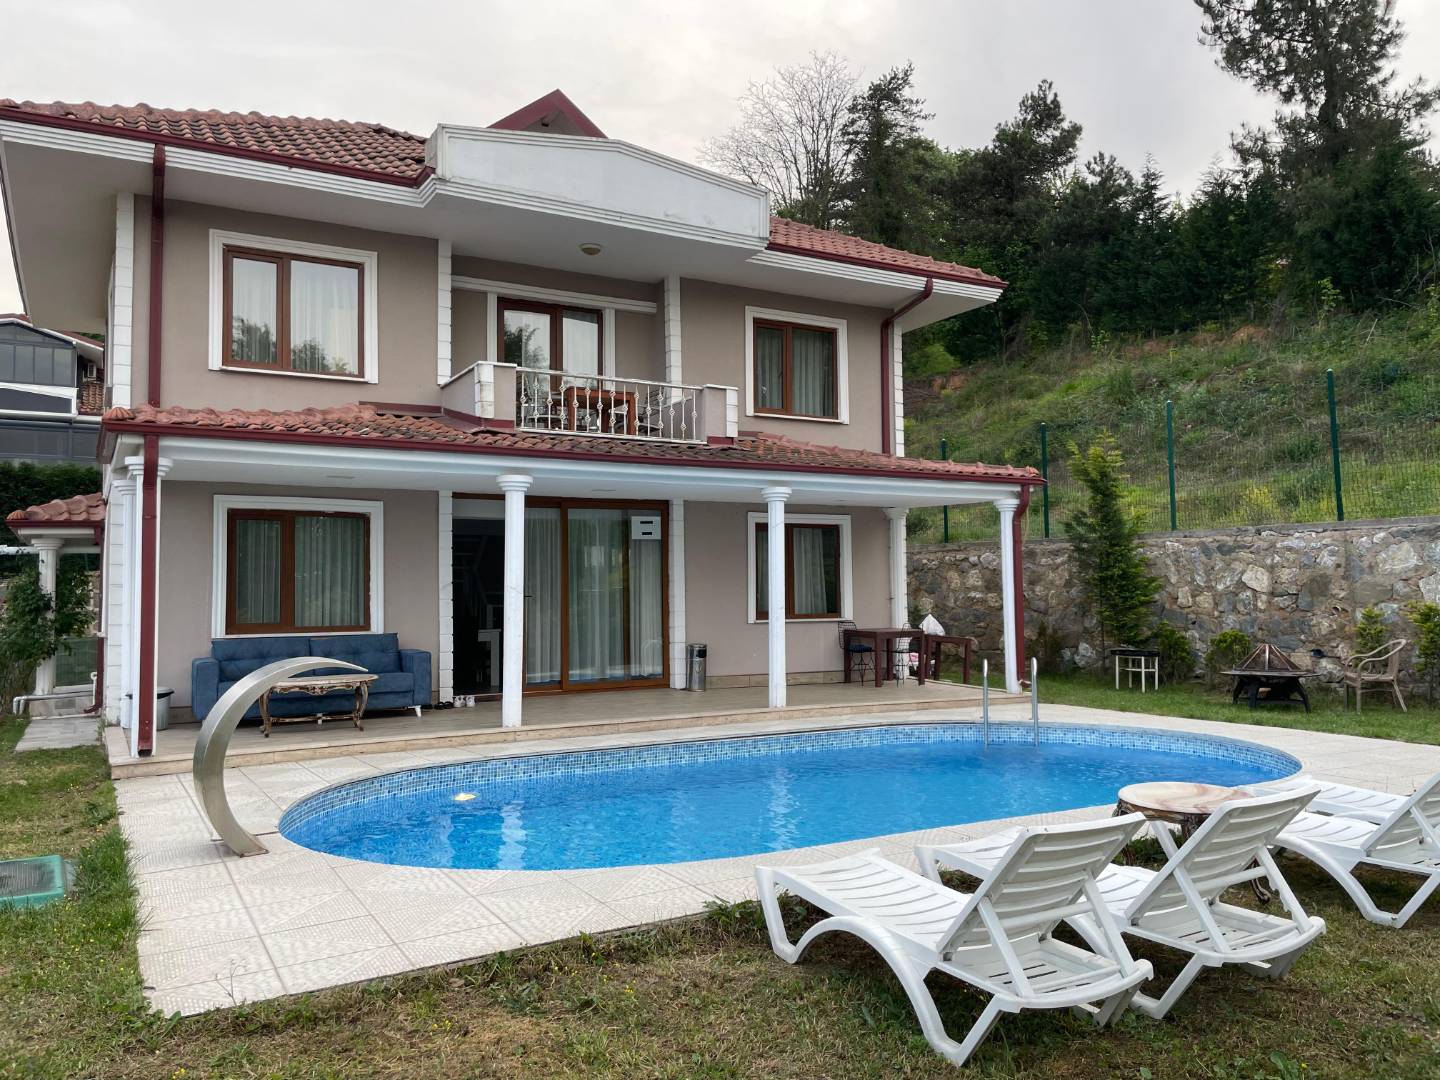 Sakarya Sapanca'da Geniş Aileler İçin Uygun, Özel Havuzlu, Modern Tasarımlı Villa